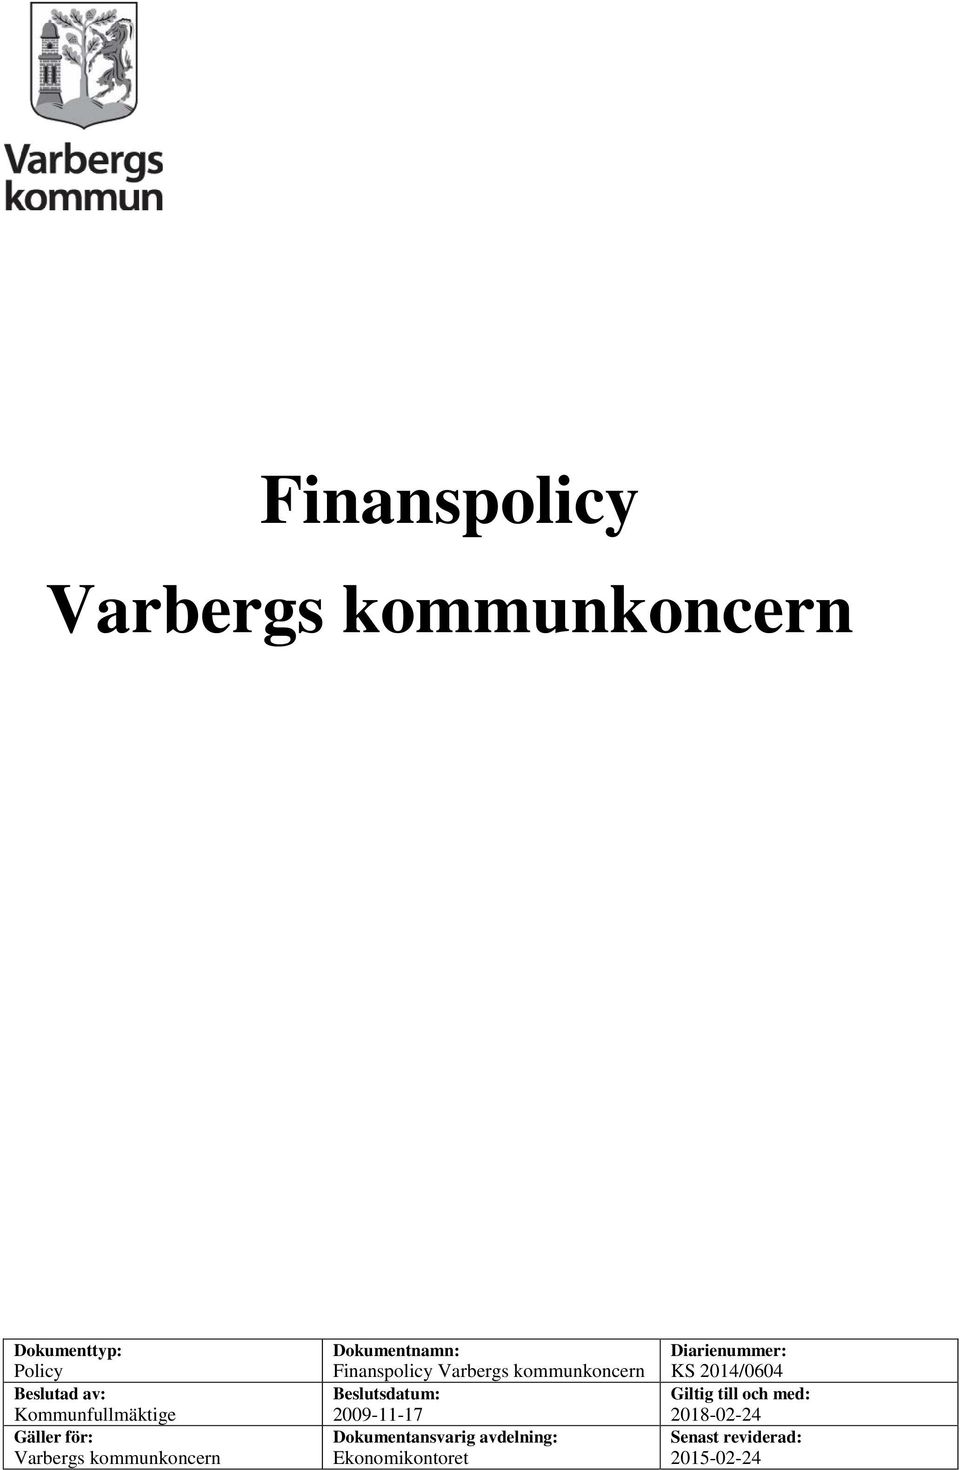 Varbergs kommunkoncern Beslutsdatum: 2009-11-17 Dokumentansvarig avdelning: